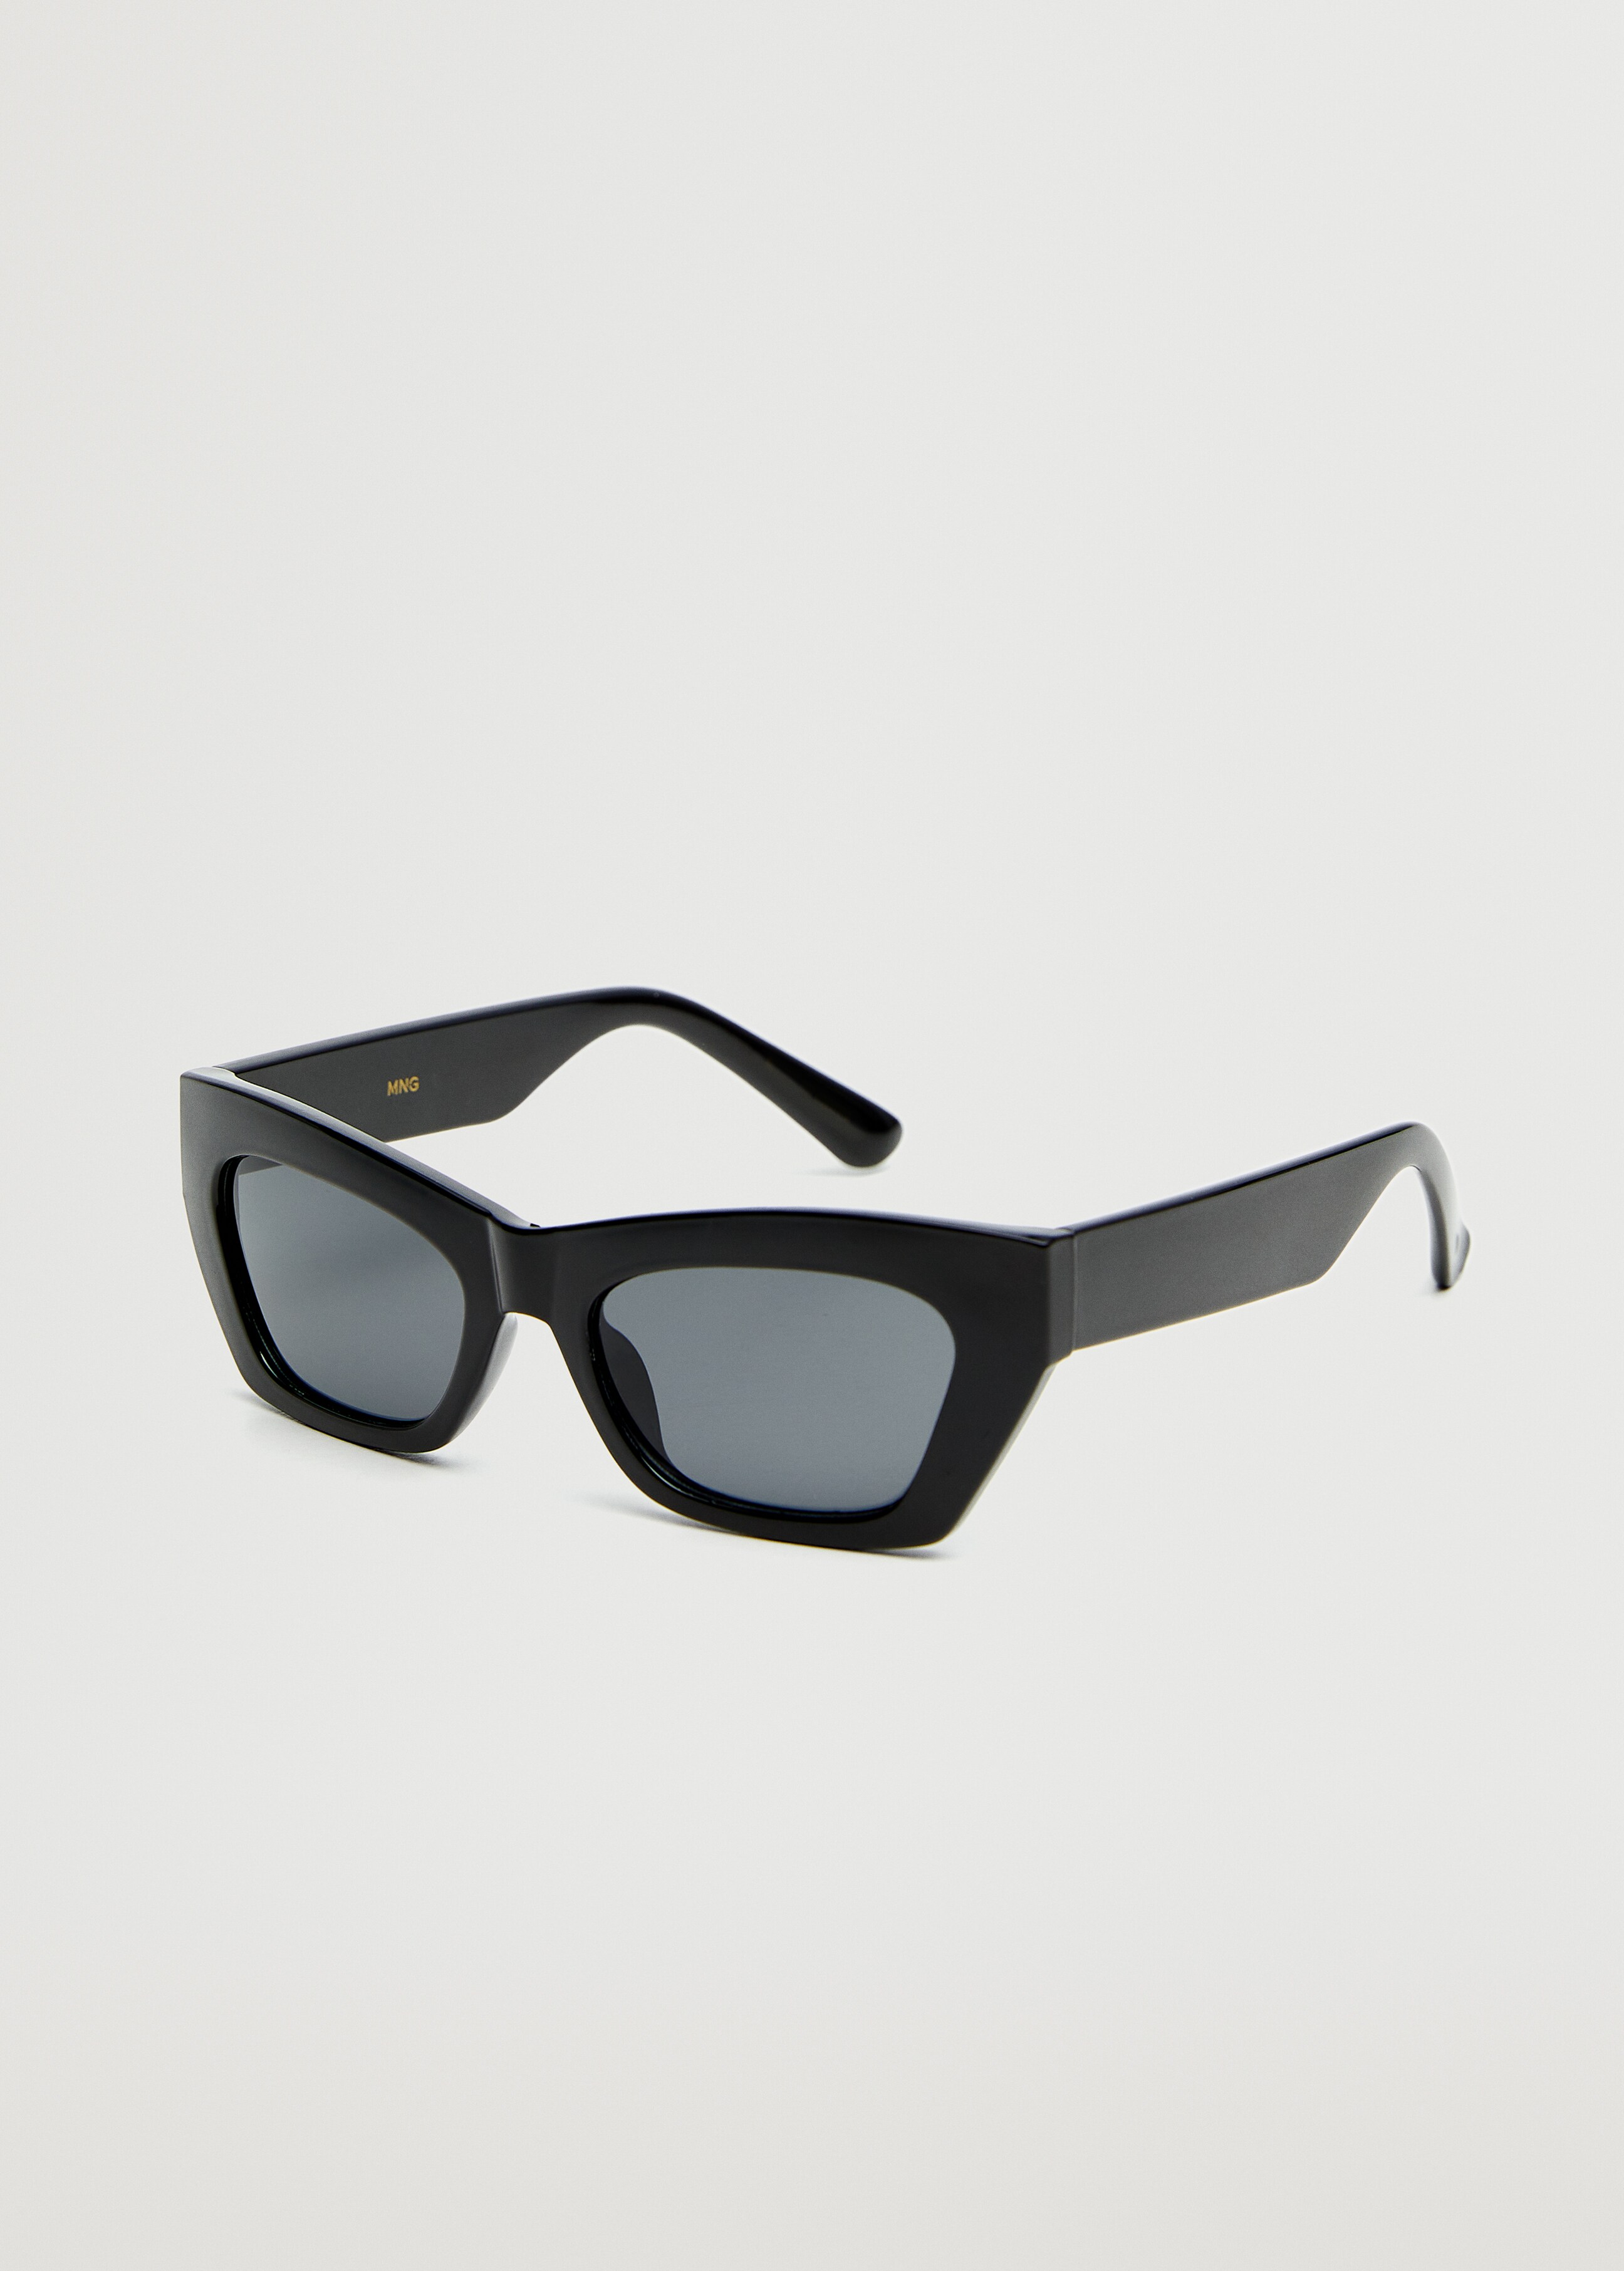 Acetate frame sunglasses - Medium plane